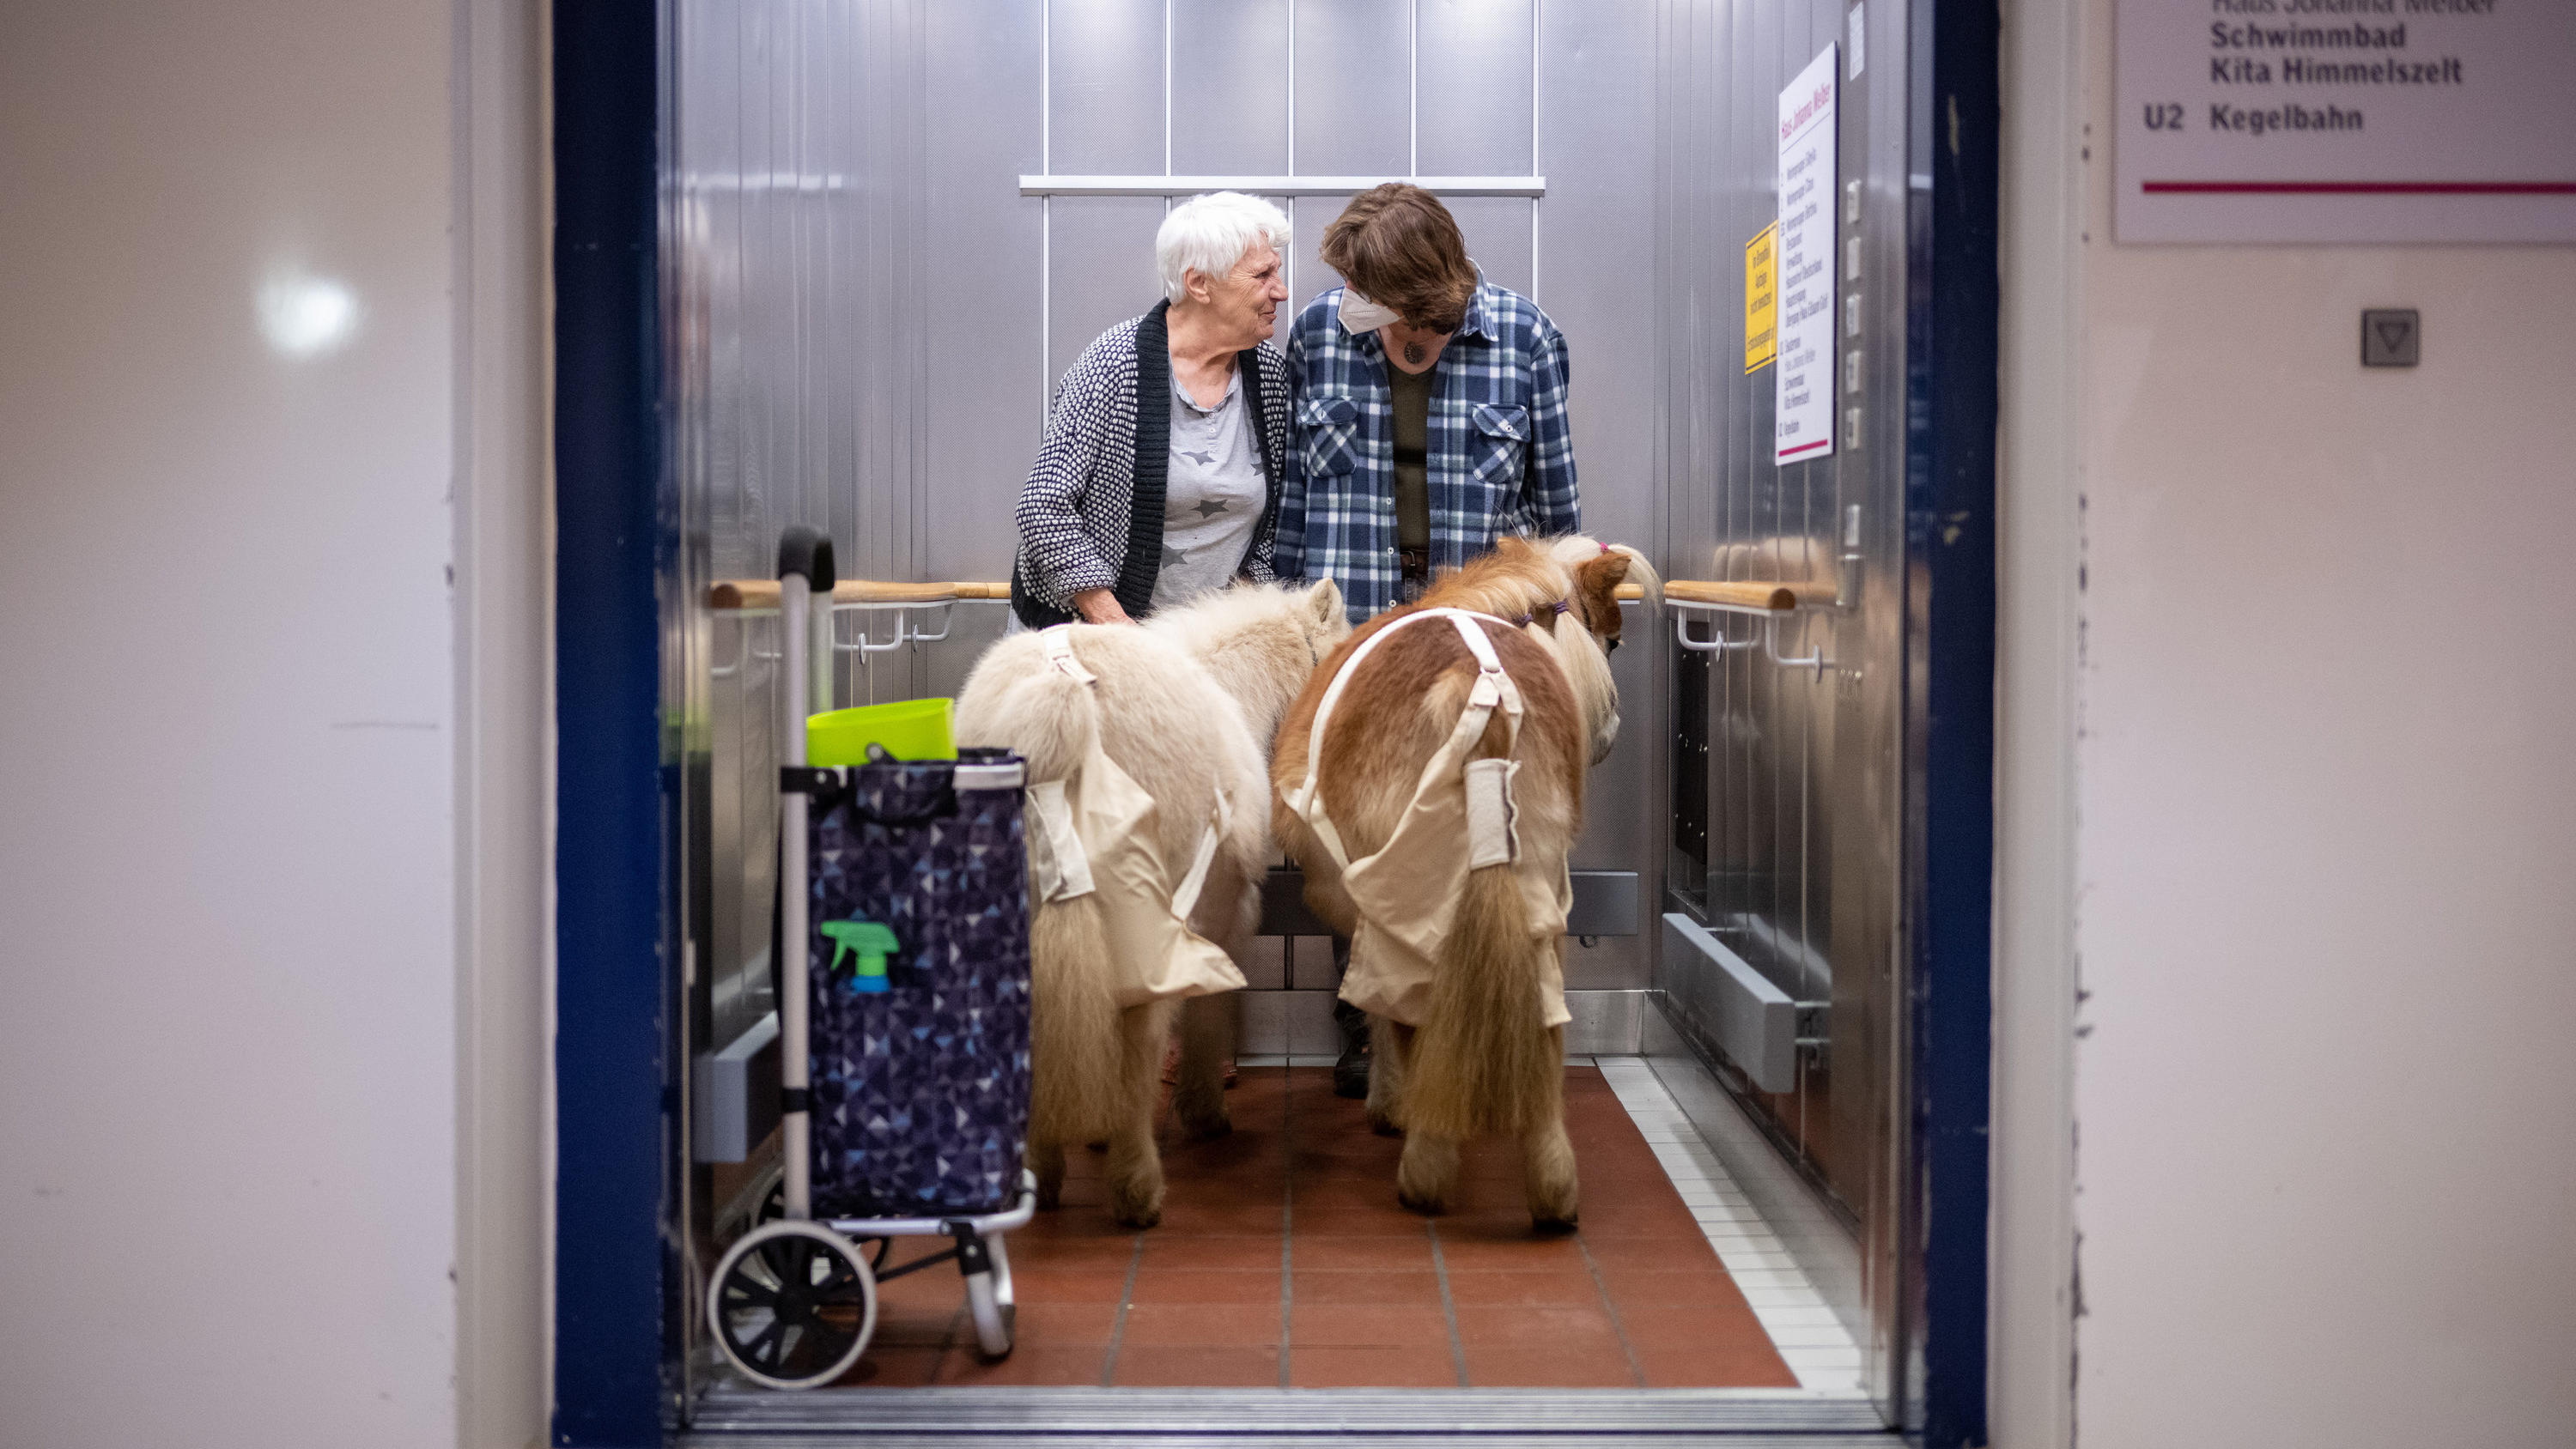 Eine Fahrt mit dem Aufzug gibt es für die Shetland-Ponys bei ihrem beuch im Pflegeheim draufzu.